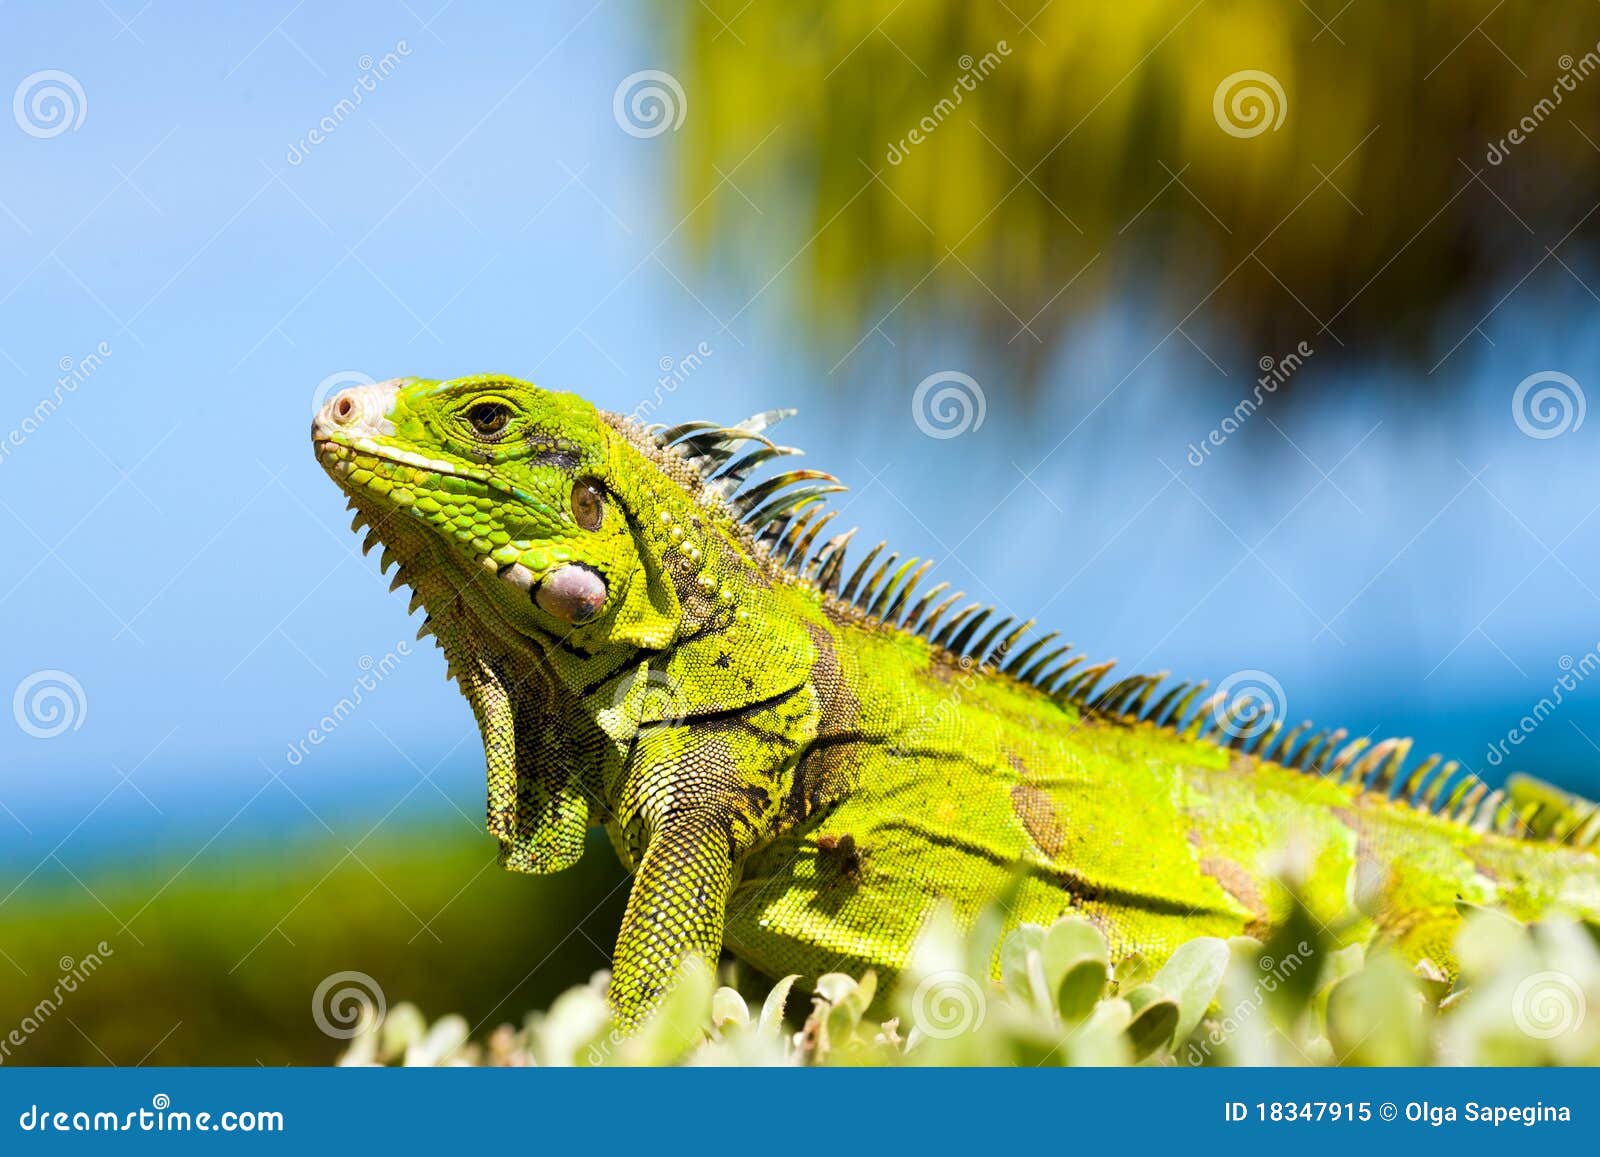 iguana yellow